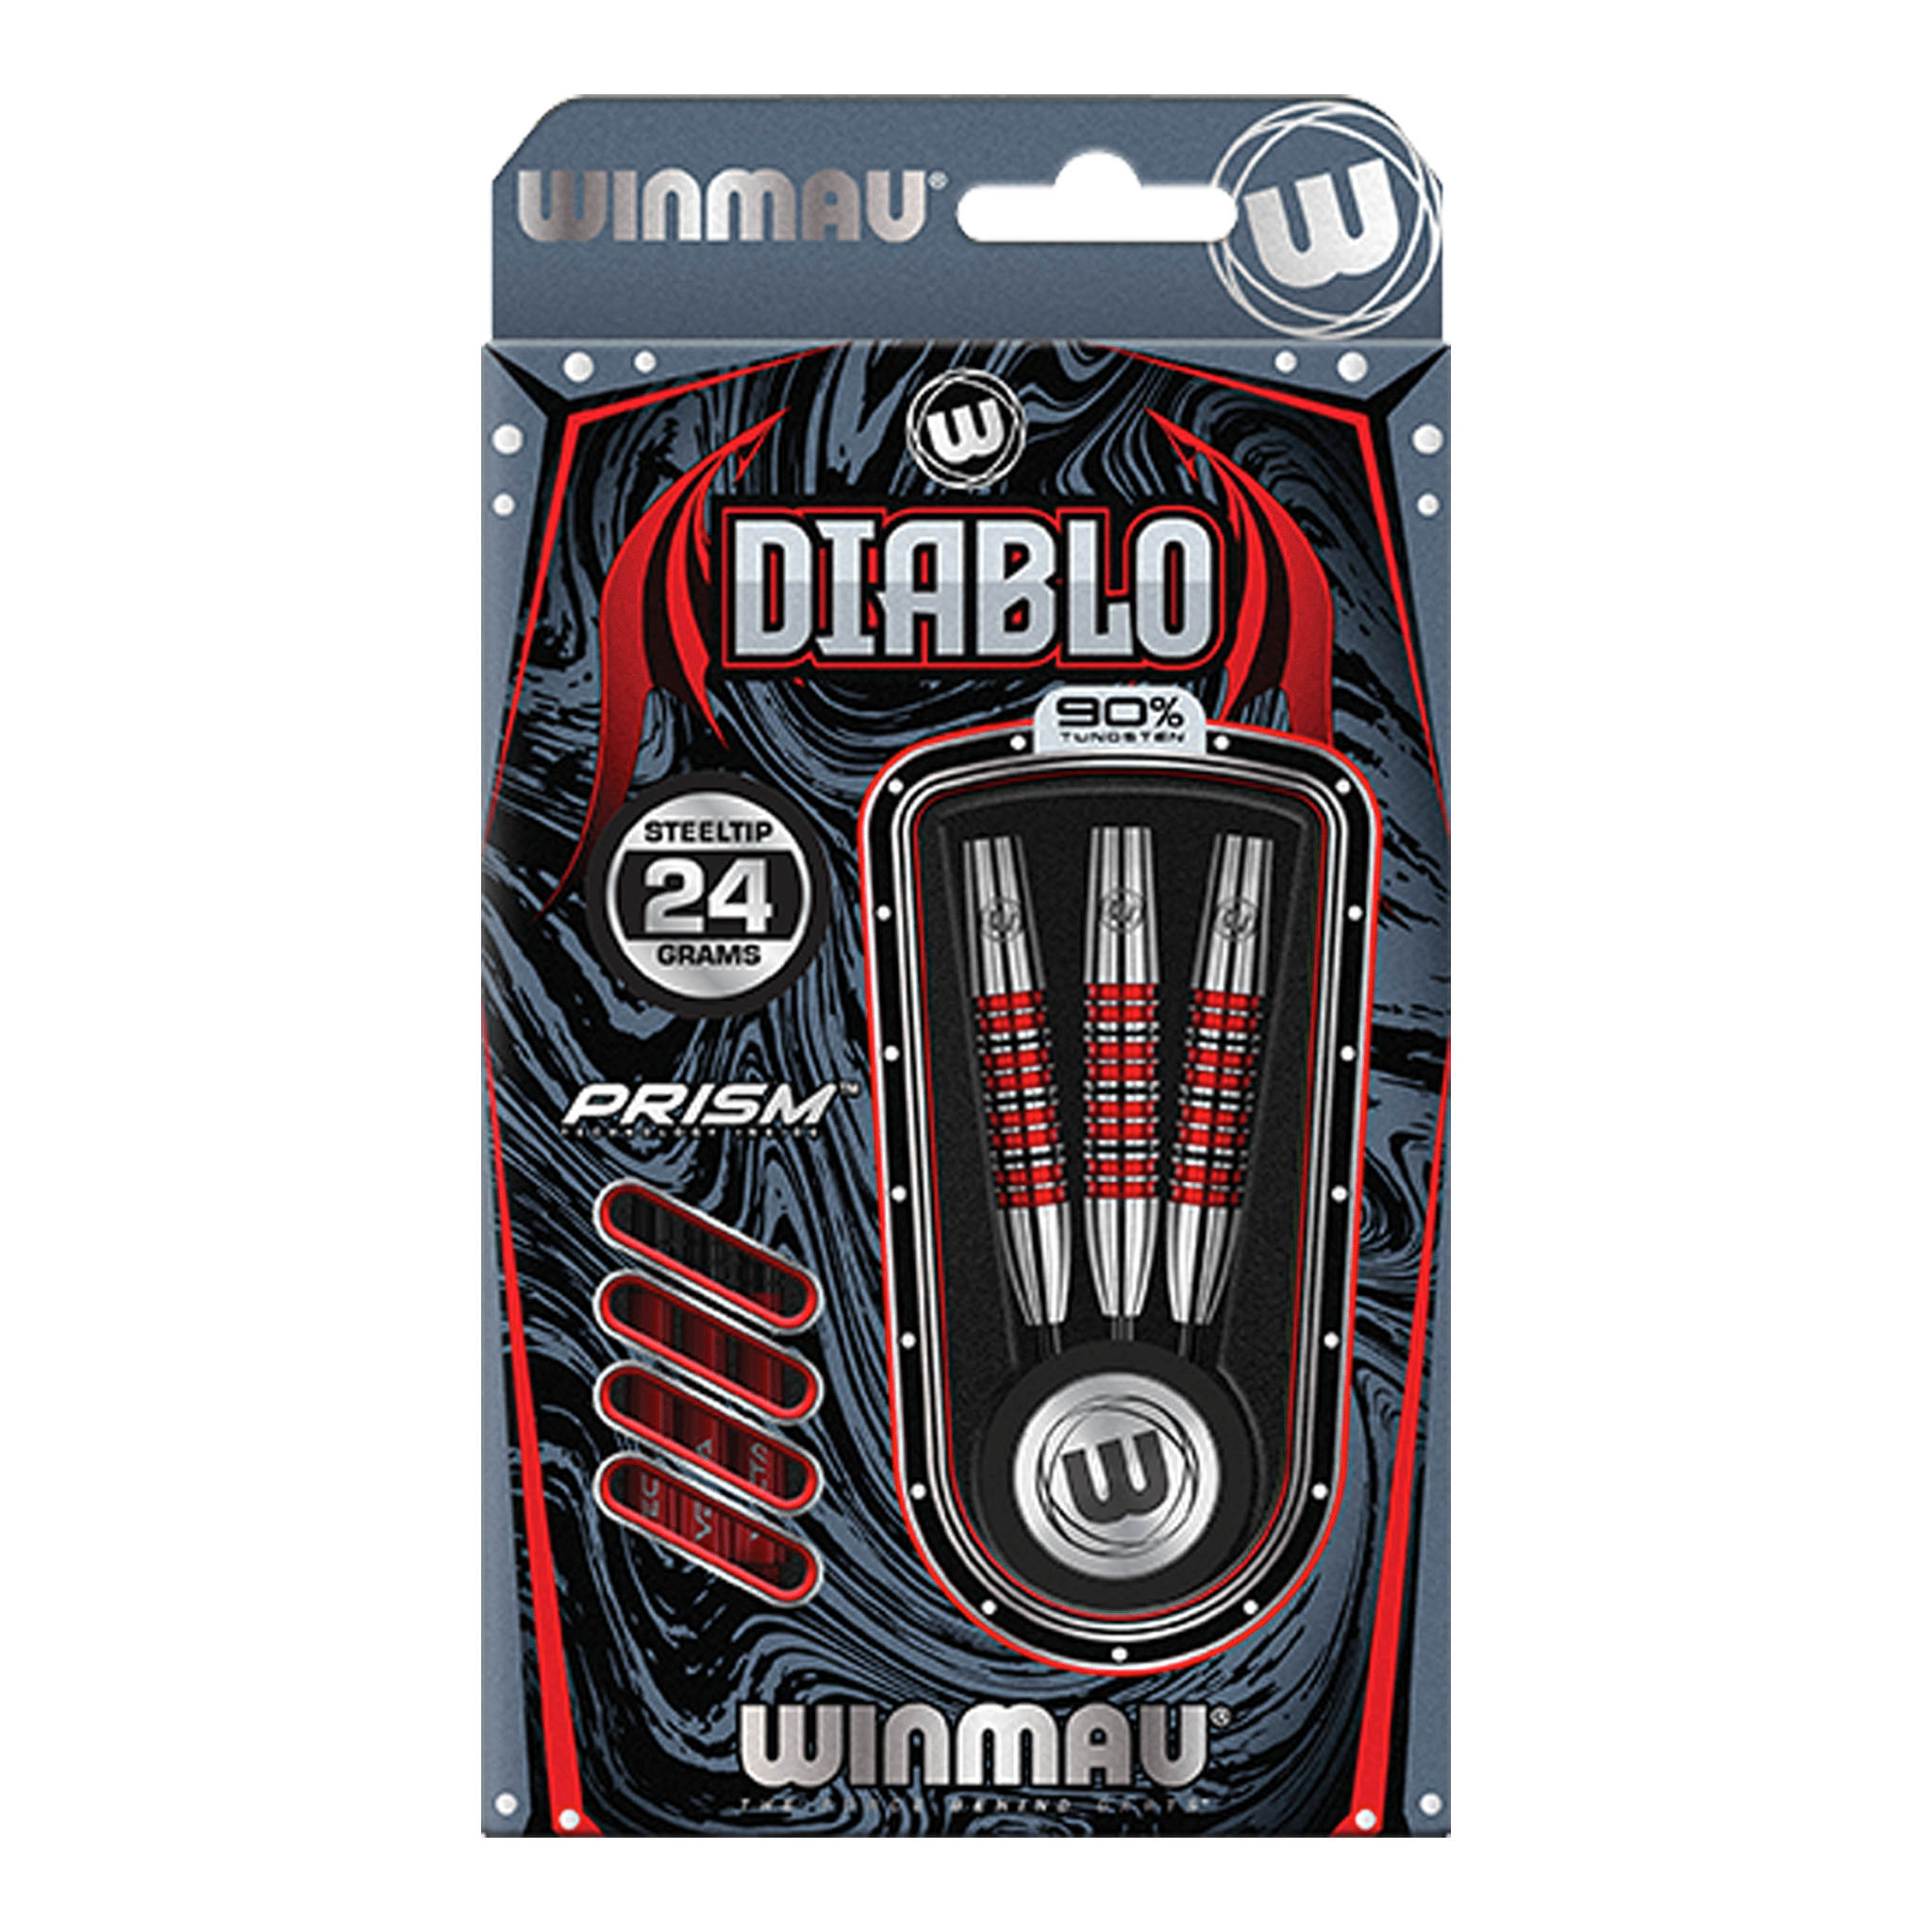 Winmau Diablo Torpedo Barrel - 90% Tungsten Steel Tip Darts Darts